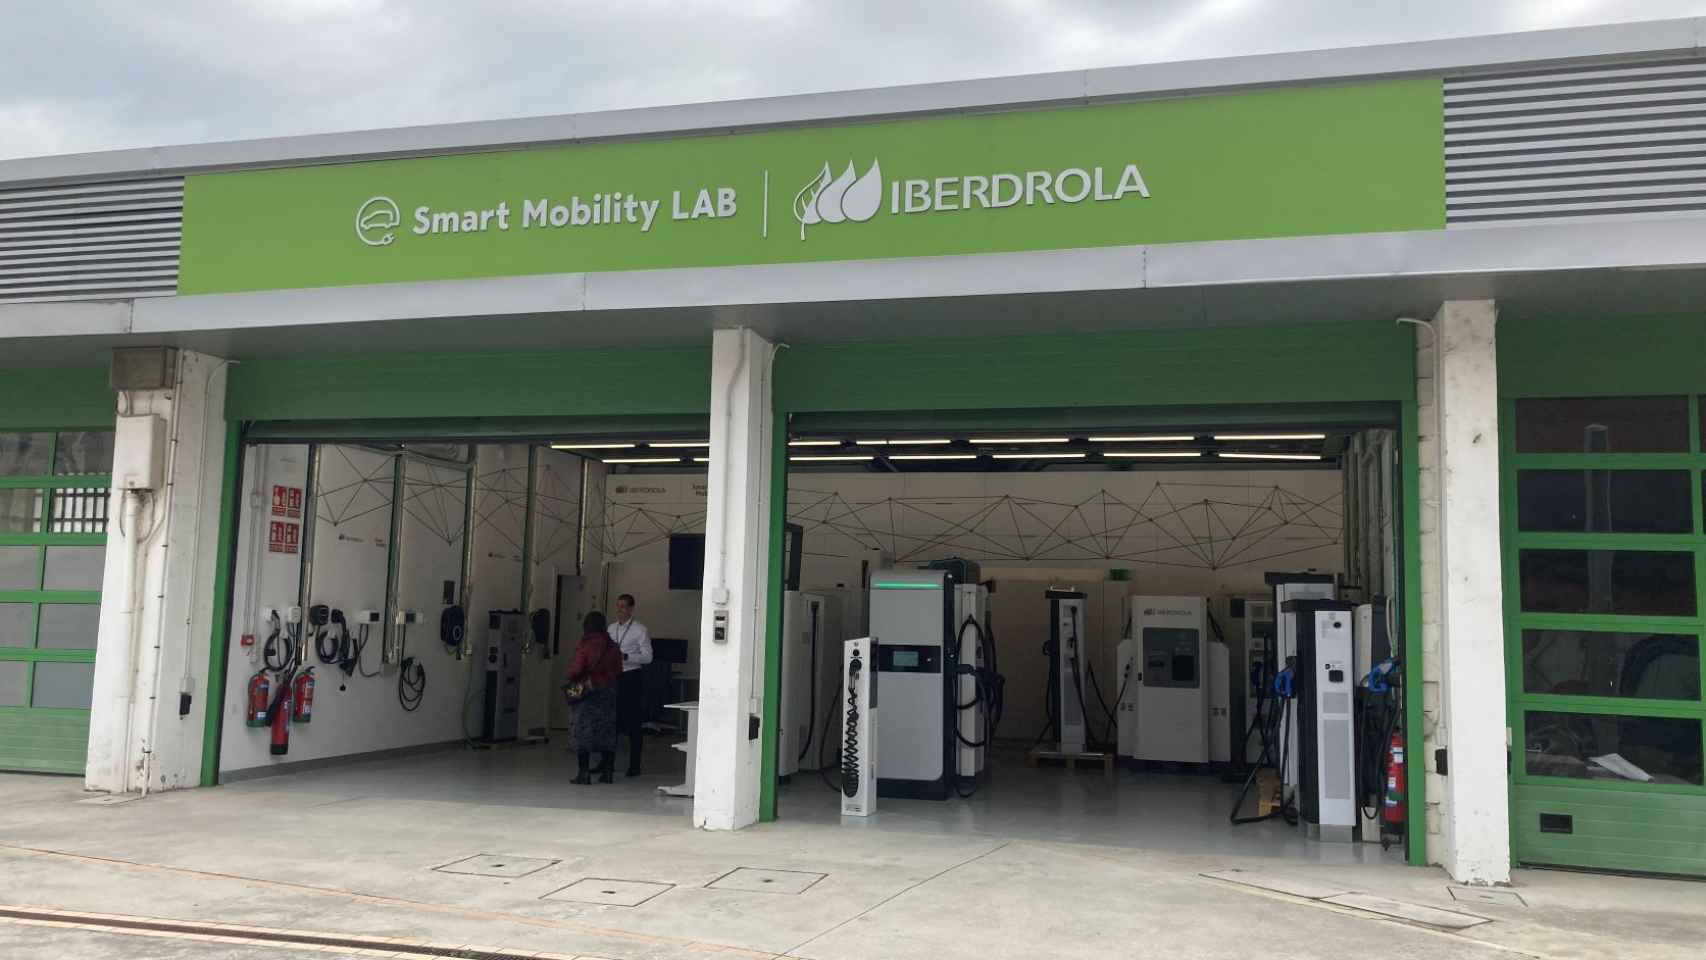 El laboratorio Smart Mobility Lab de Iberdrola en las instalaciones de Larraskitu, en Bilbao.